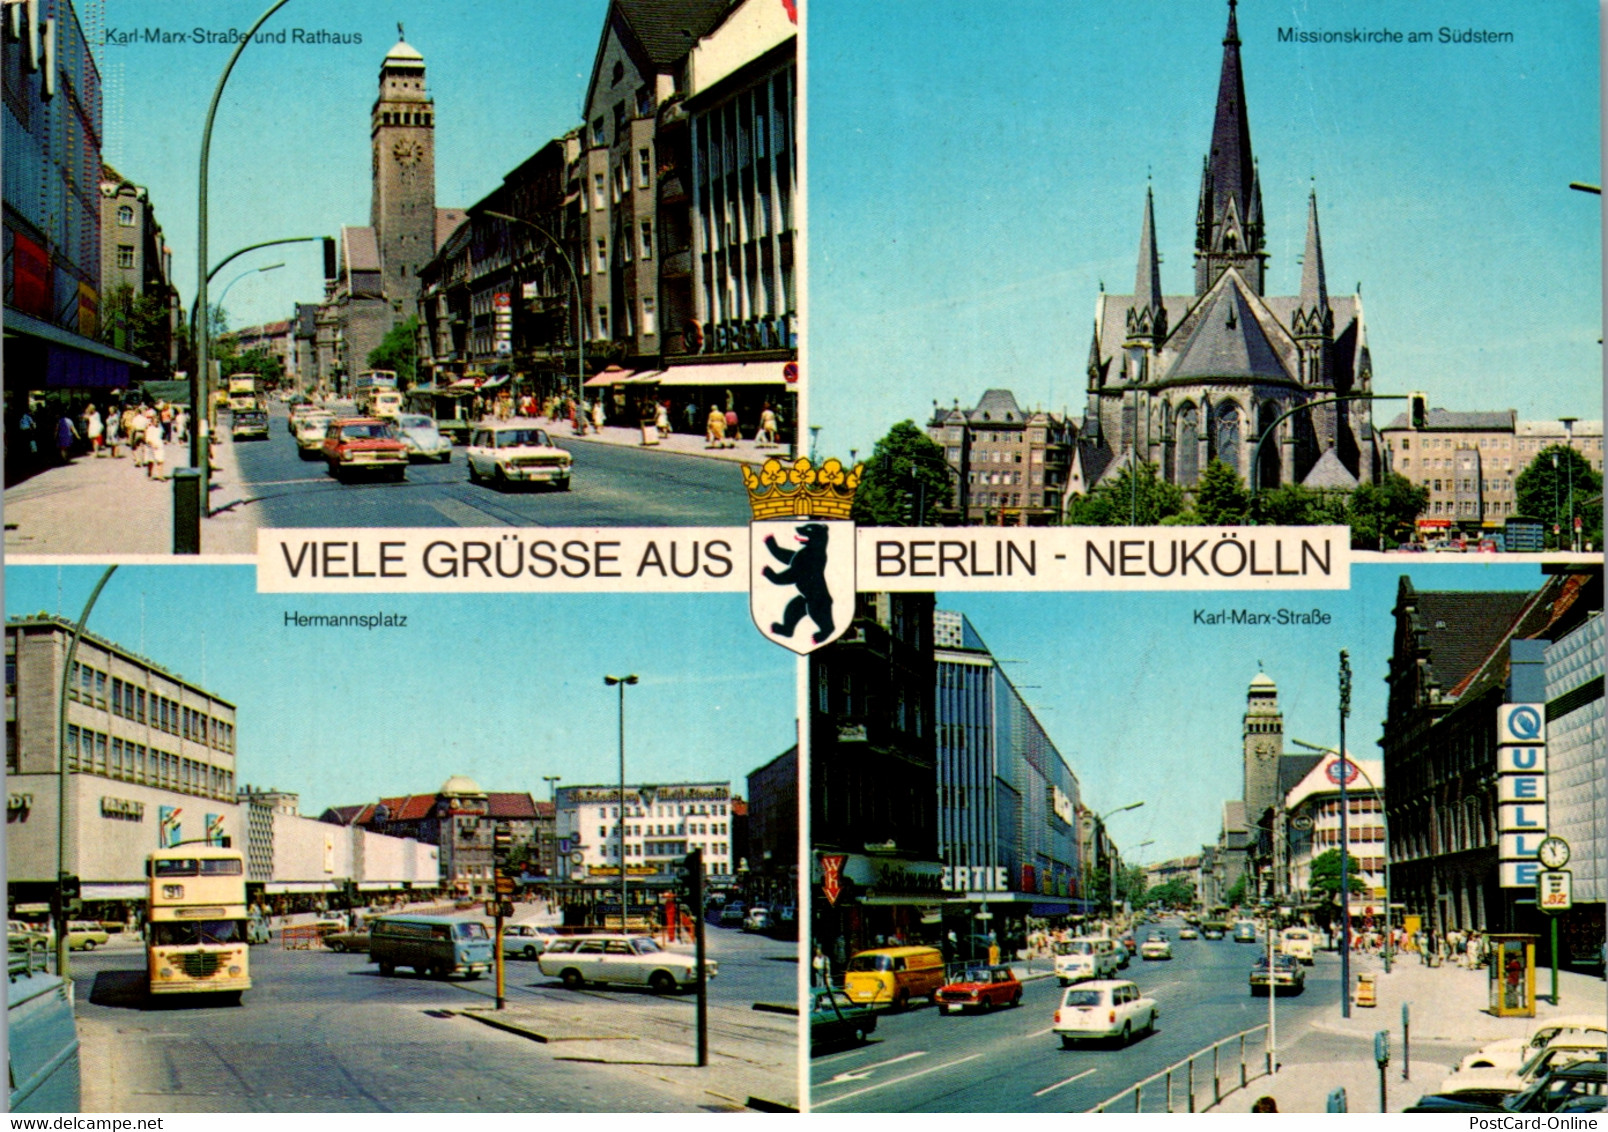 33737 - Deutschland - Berlin , Neukölln , Karl Marx Straße , Hermannsplatz , Missionskirche Am Südstern - Neukoelln